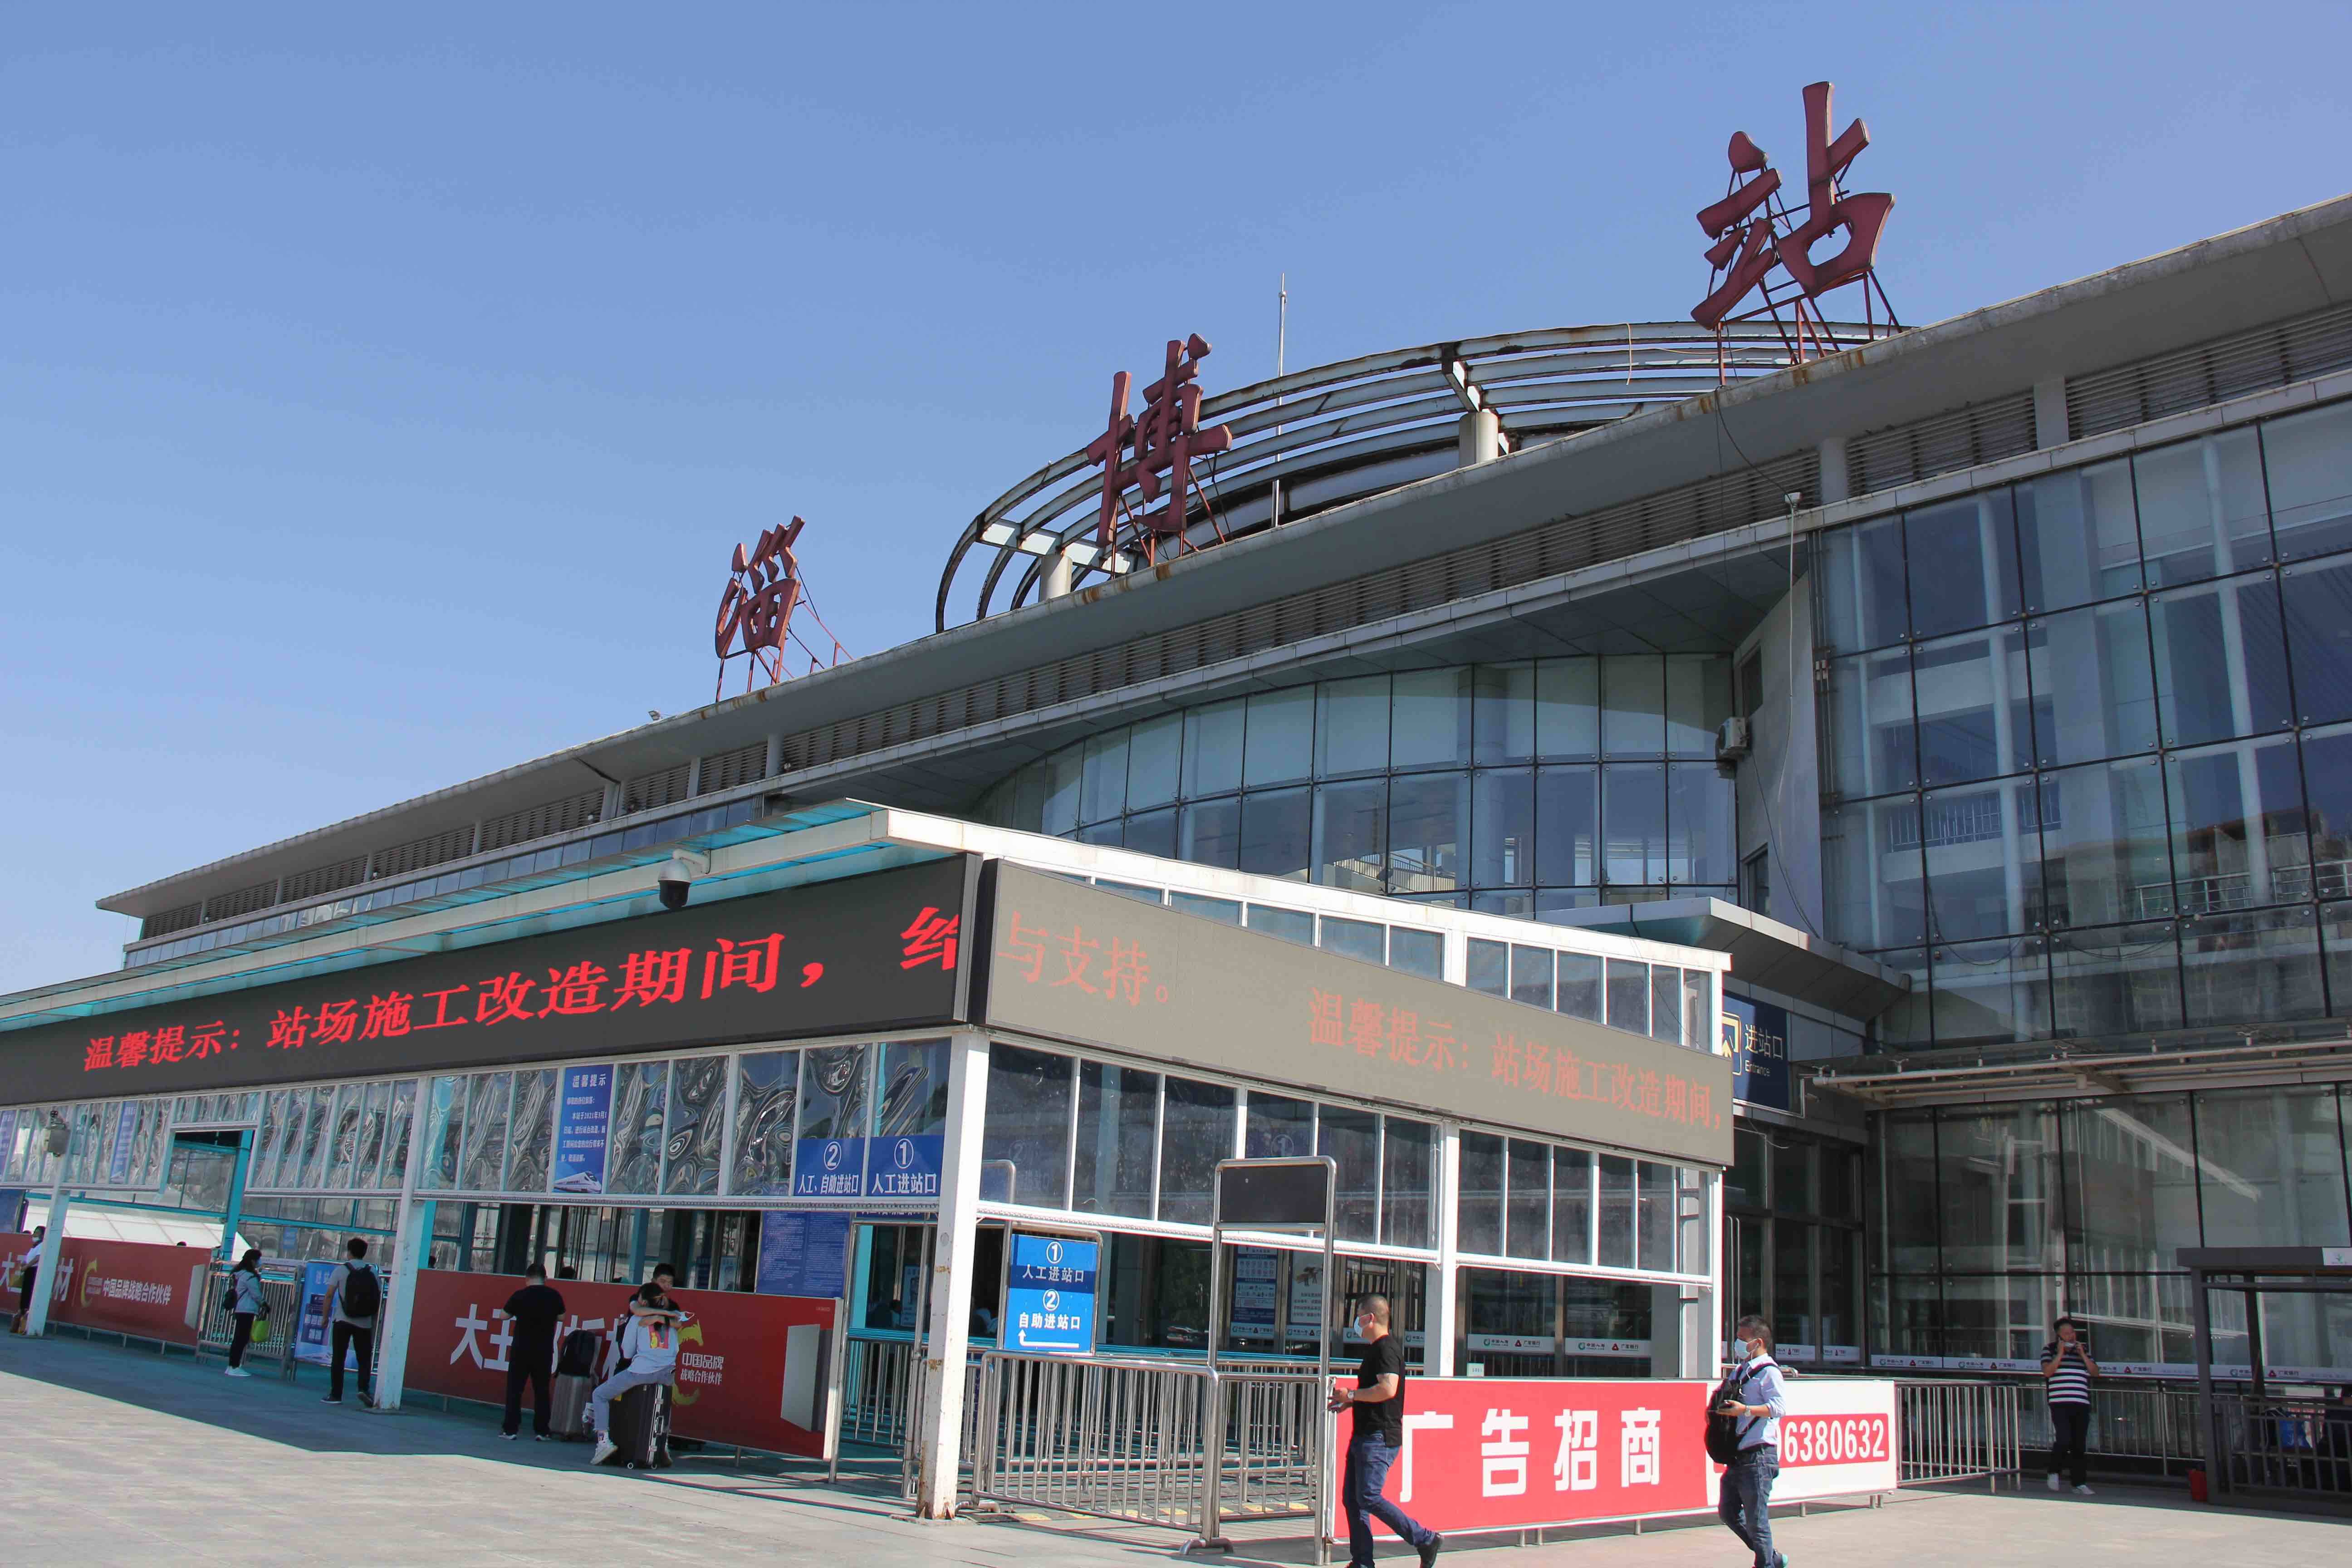 端午假期淄博火车站预计发送旅客11万人次 加开多趟列车